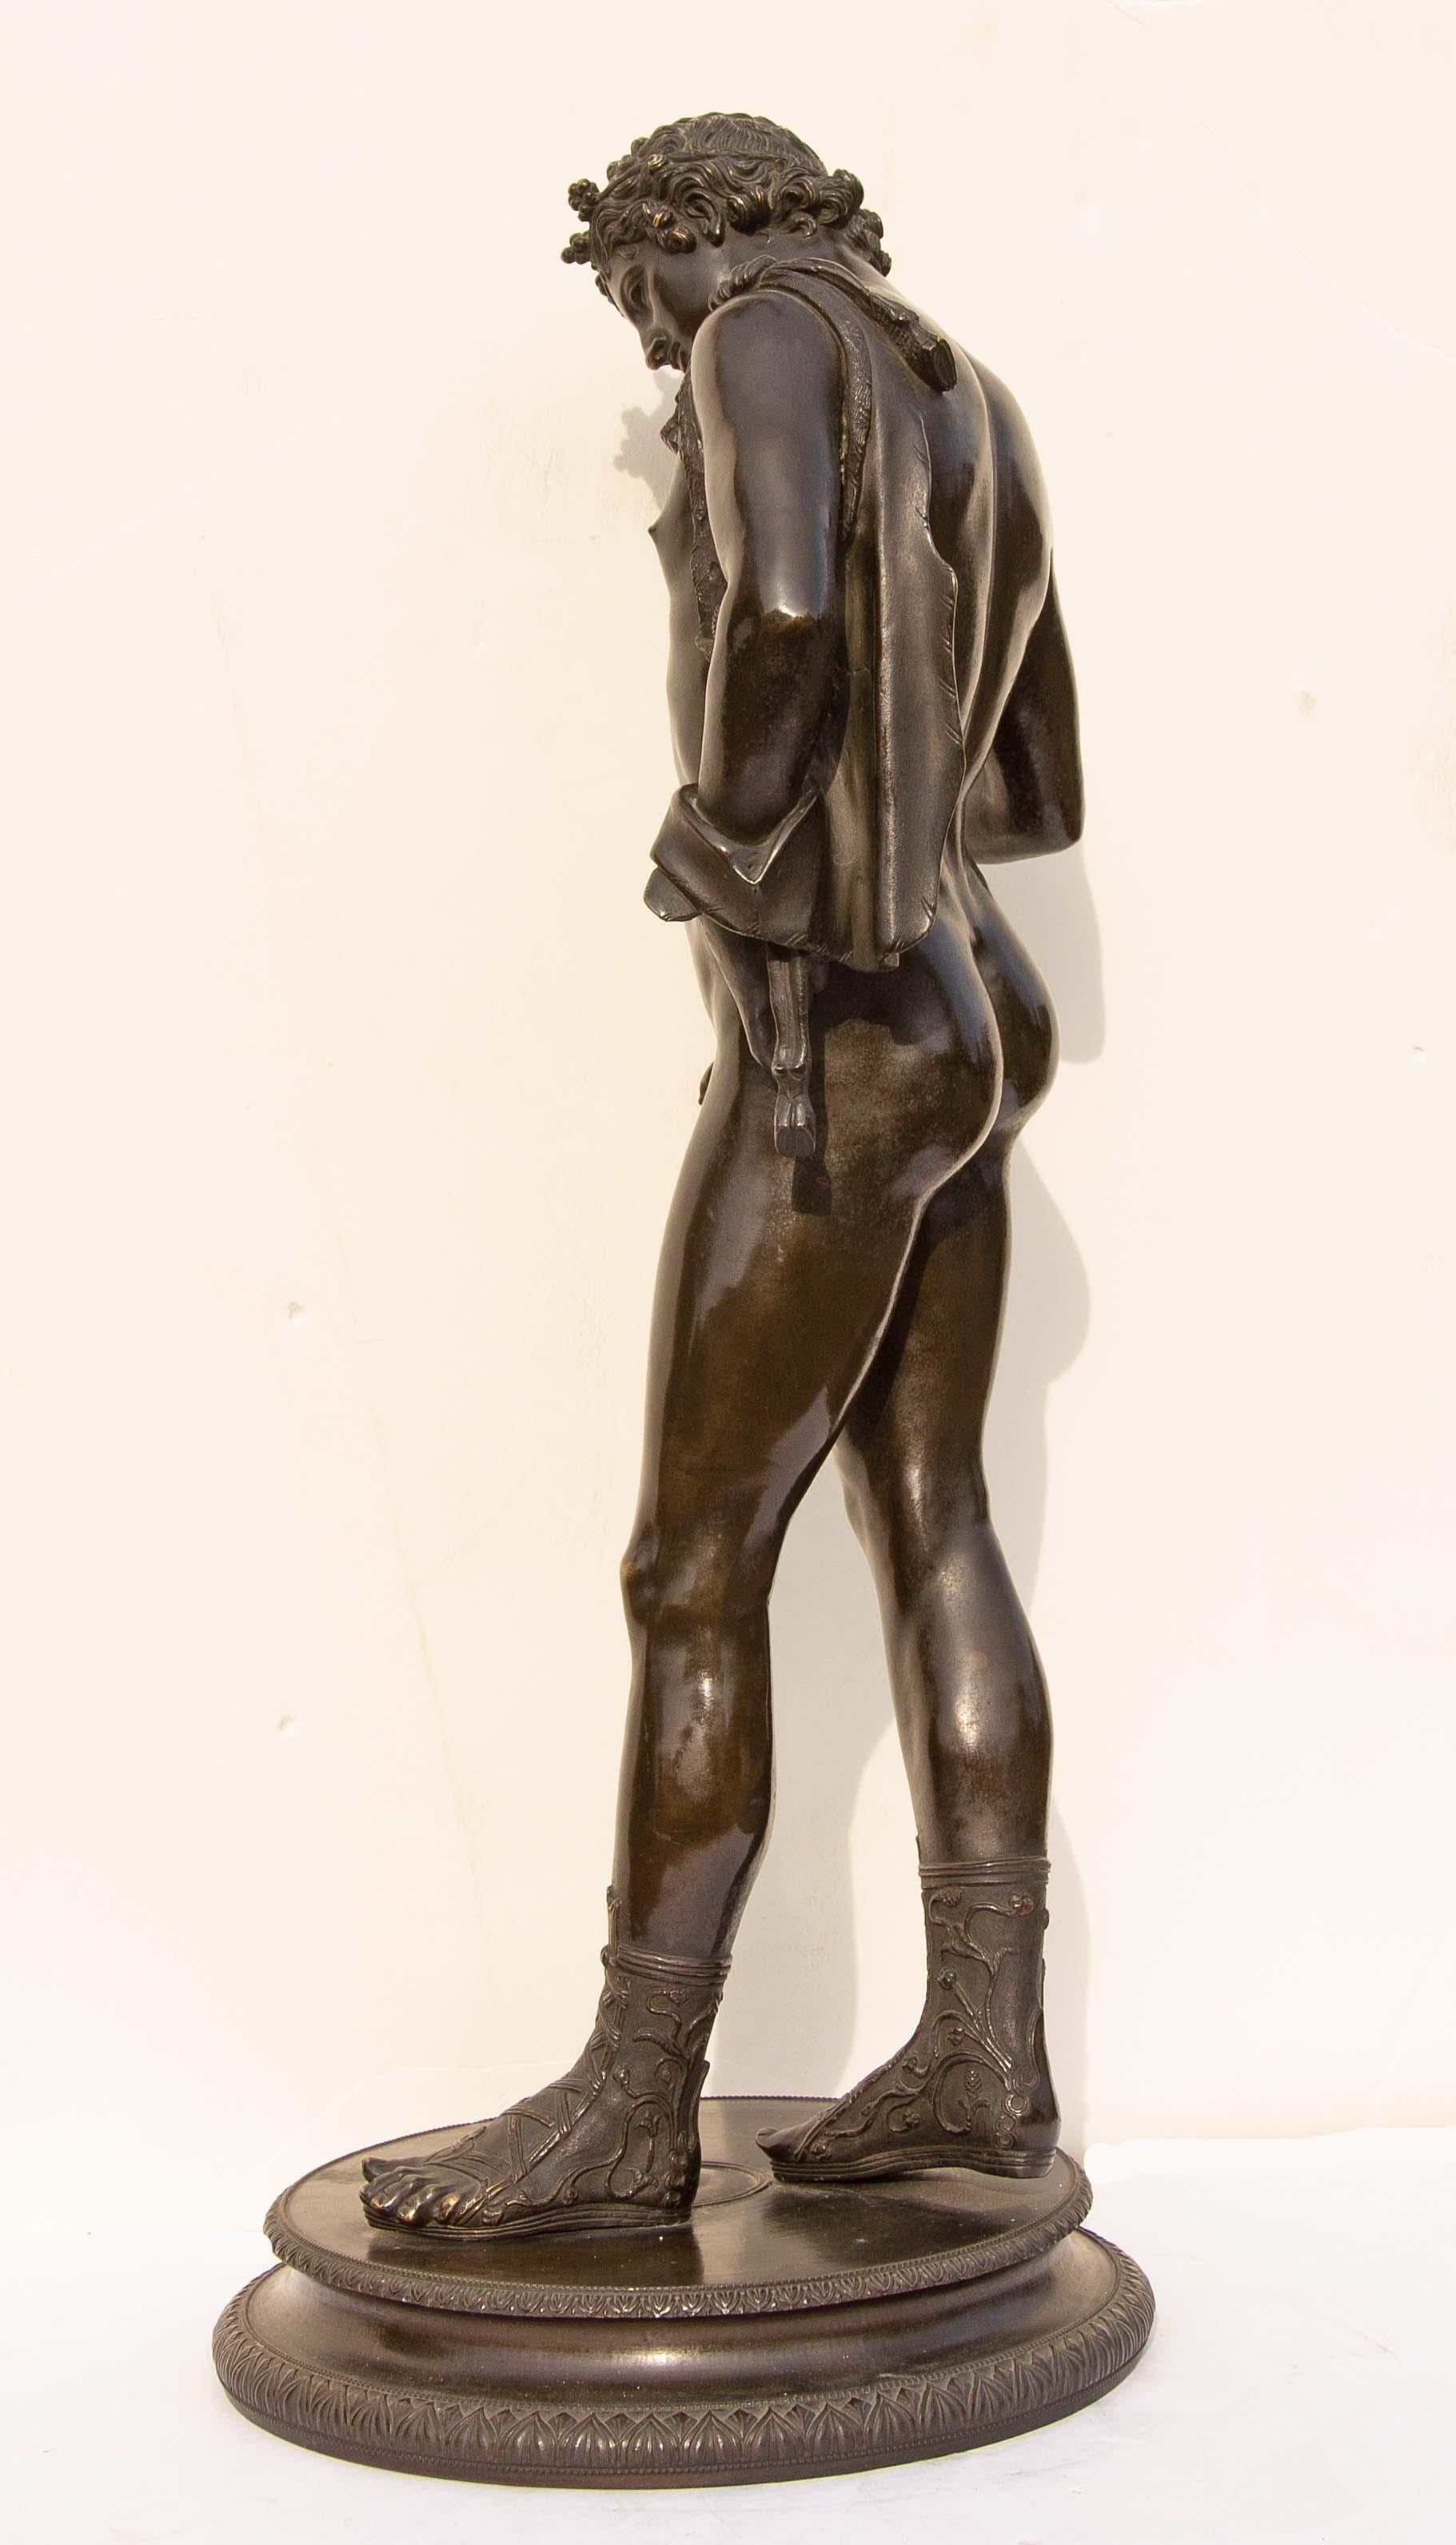 European Classical Bronze Sculpture of Narcissus